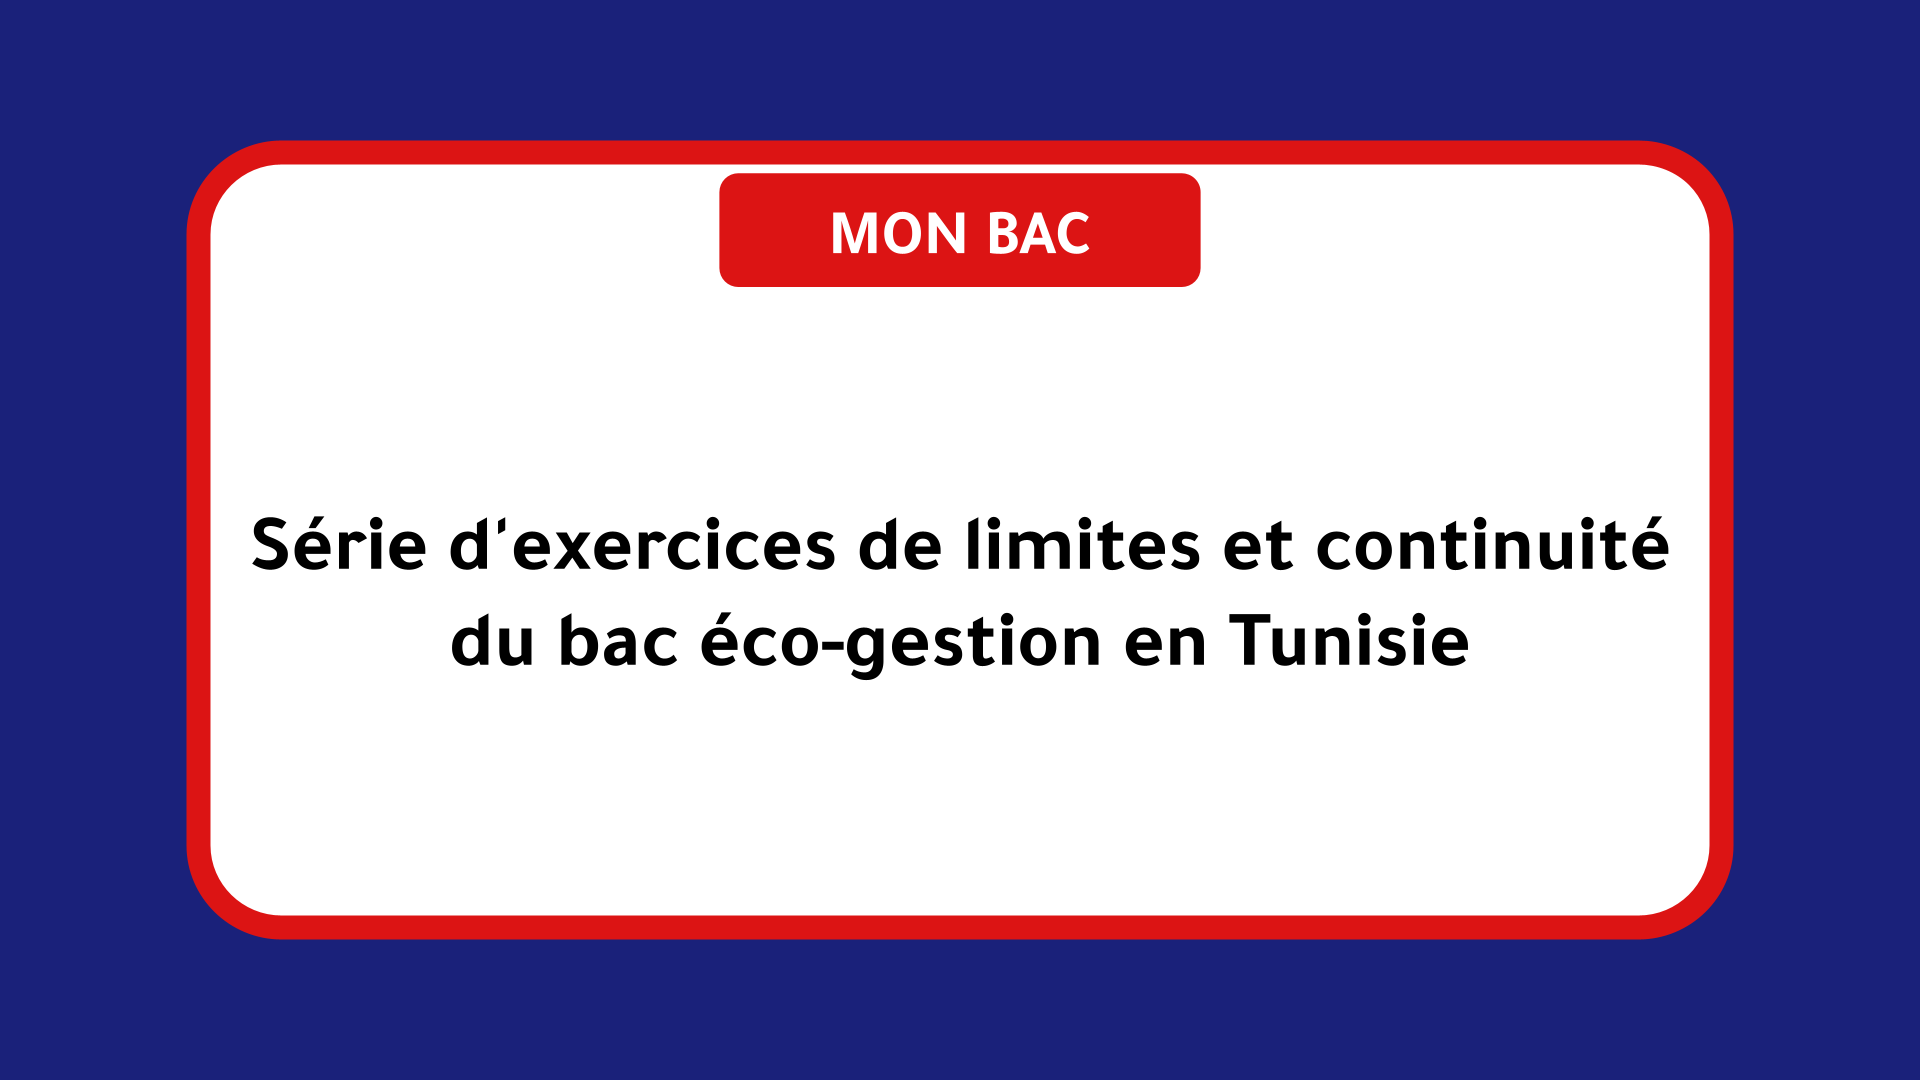 Série d'exercices de limites et continuité bac éco-gestion Tunisie